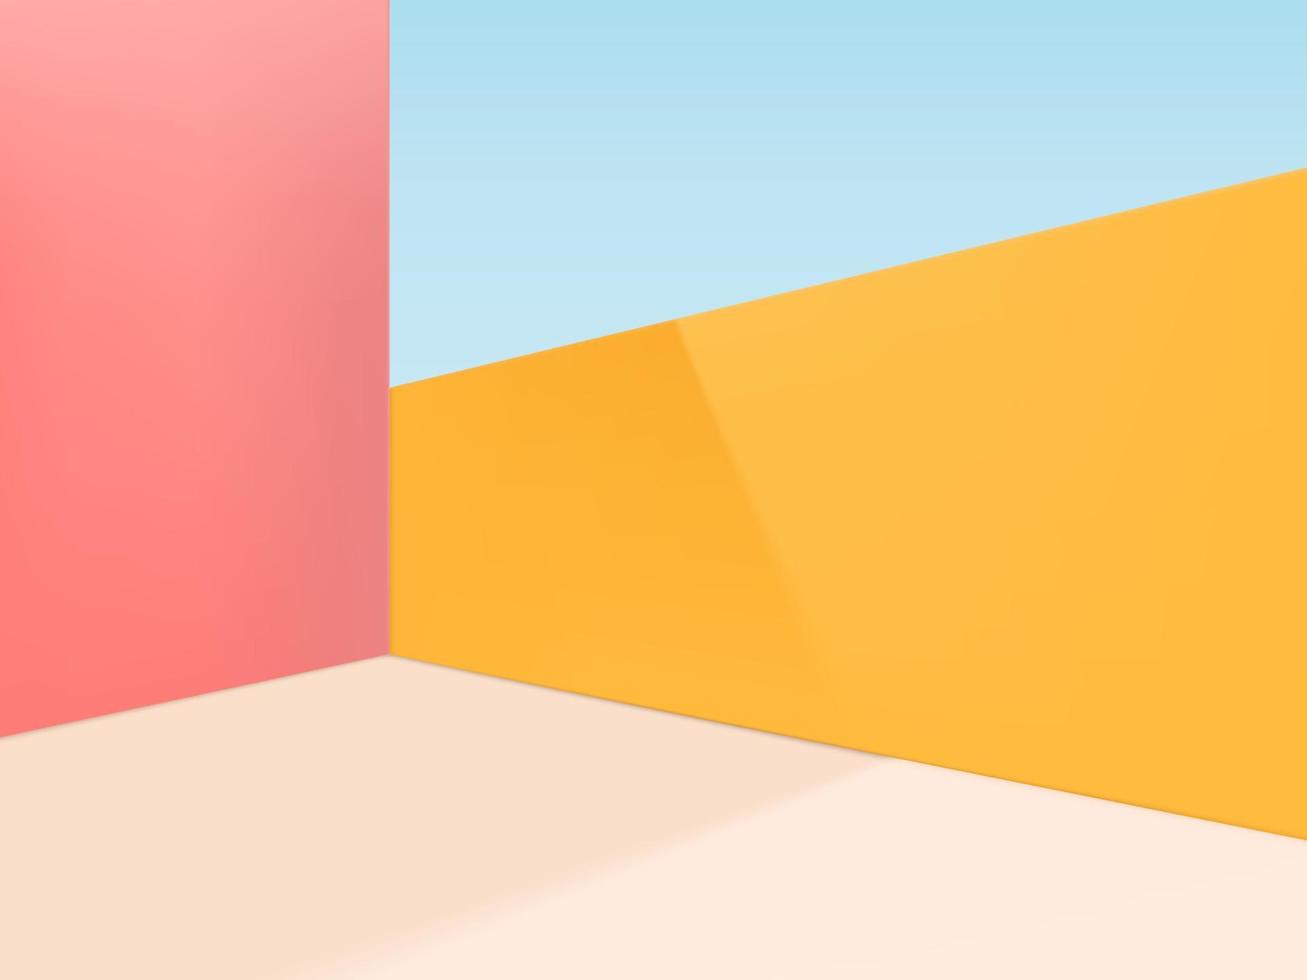 vector minimale geometrische vormen studio shot achtergrond. roze, beige en geel